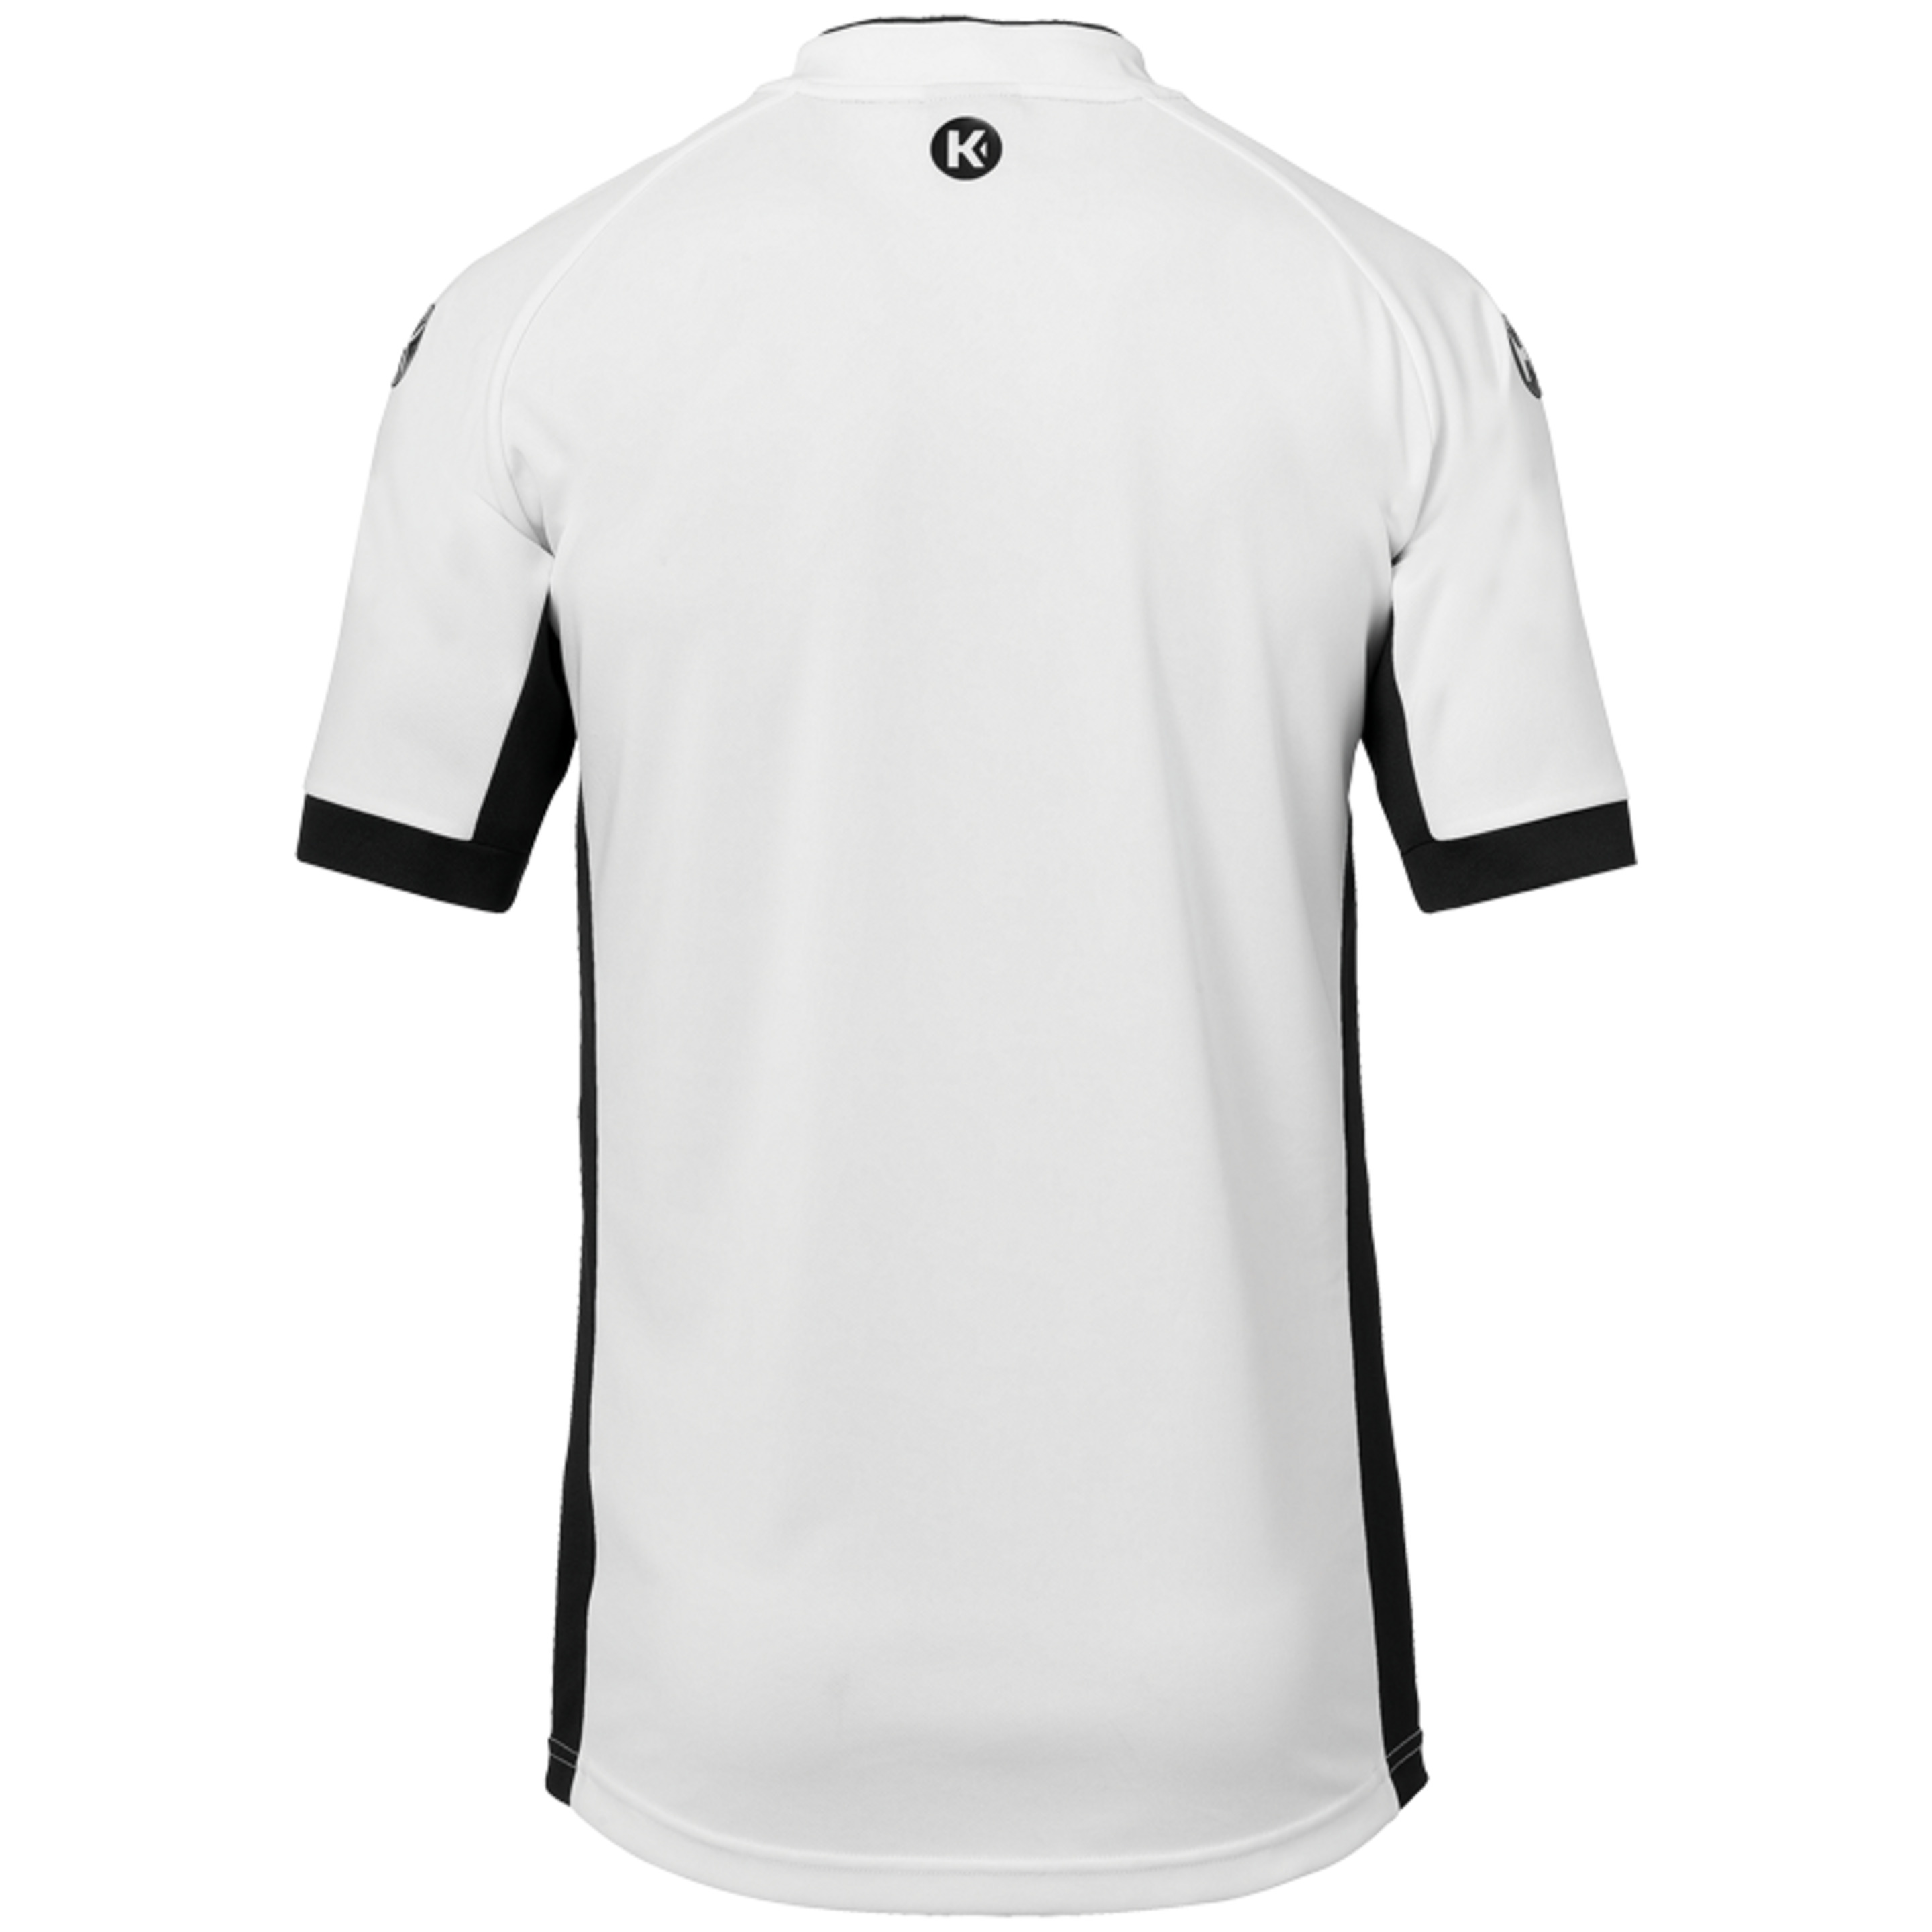 Prime Shirt Blanco/negro Kempa